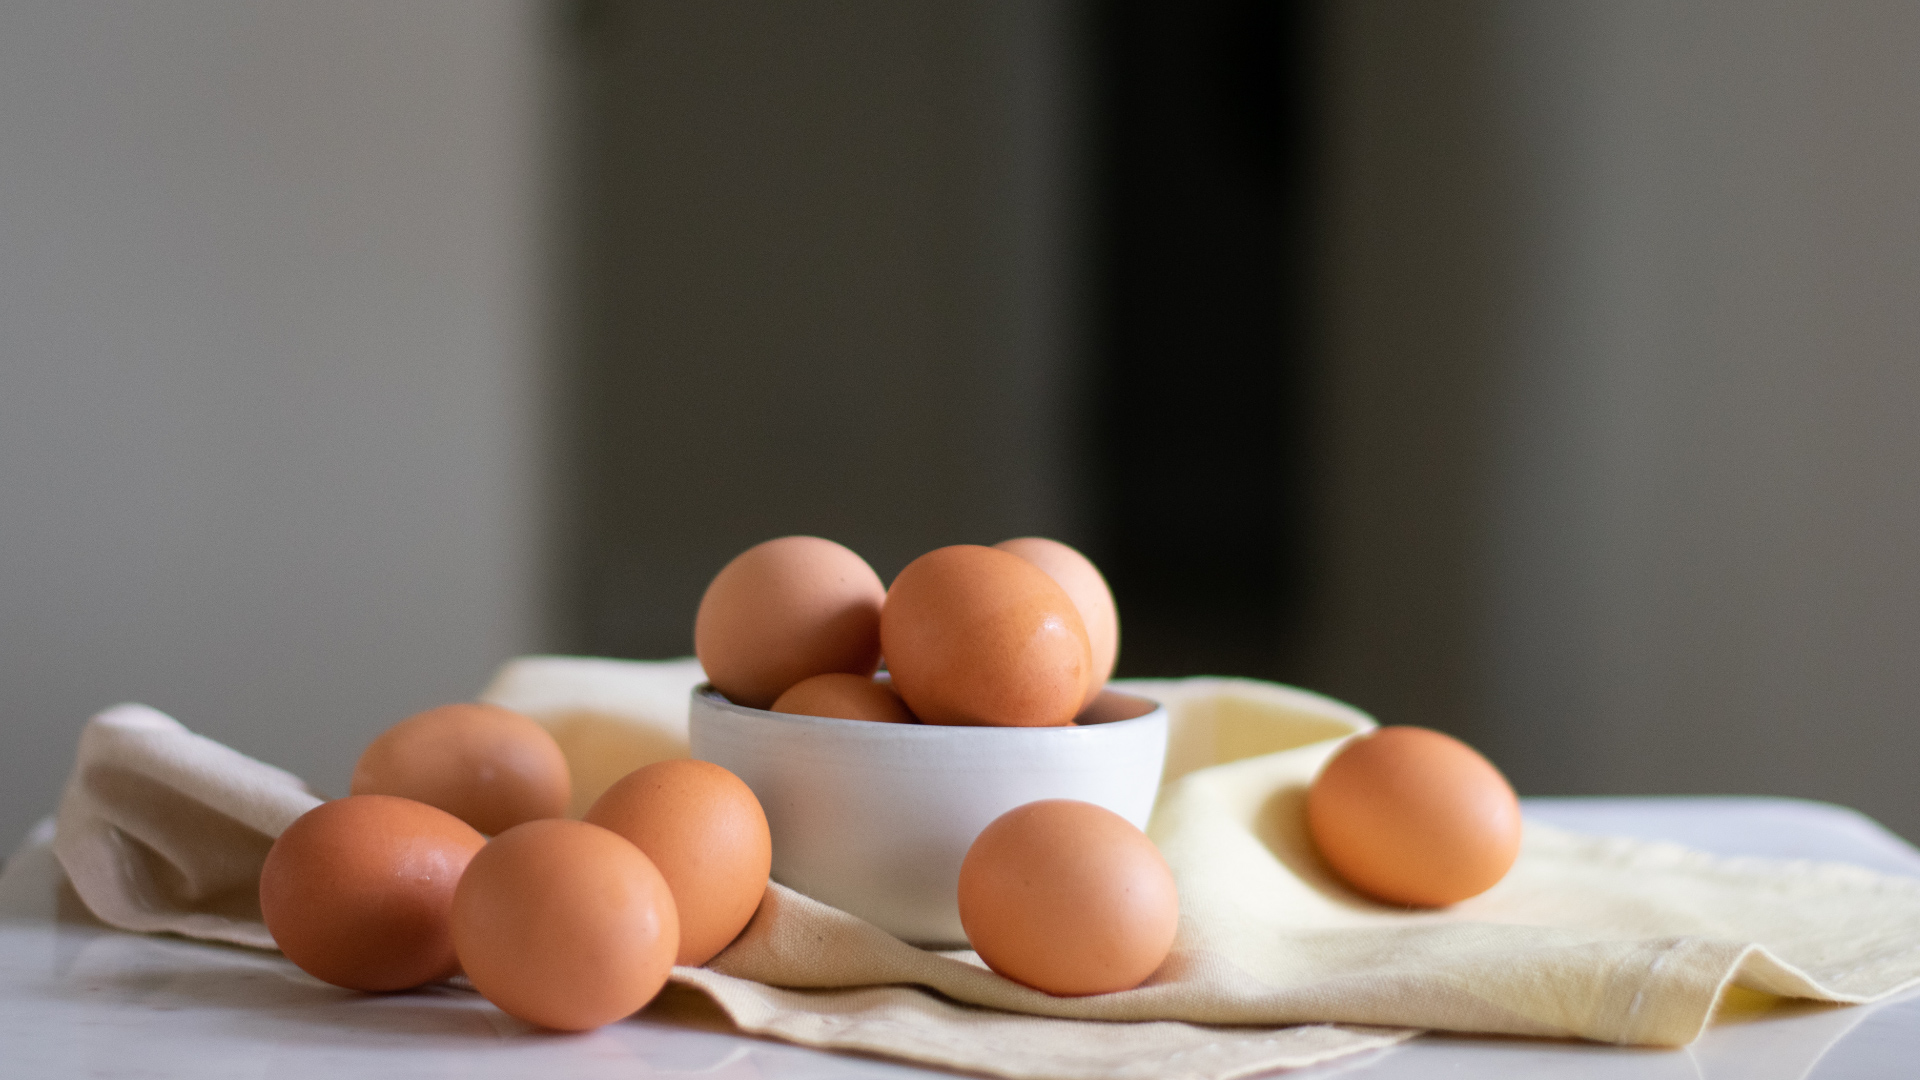 recetas_huevos cocidos_como cocerlos, beneficios_gallina blanca